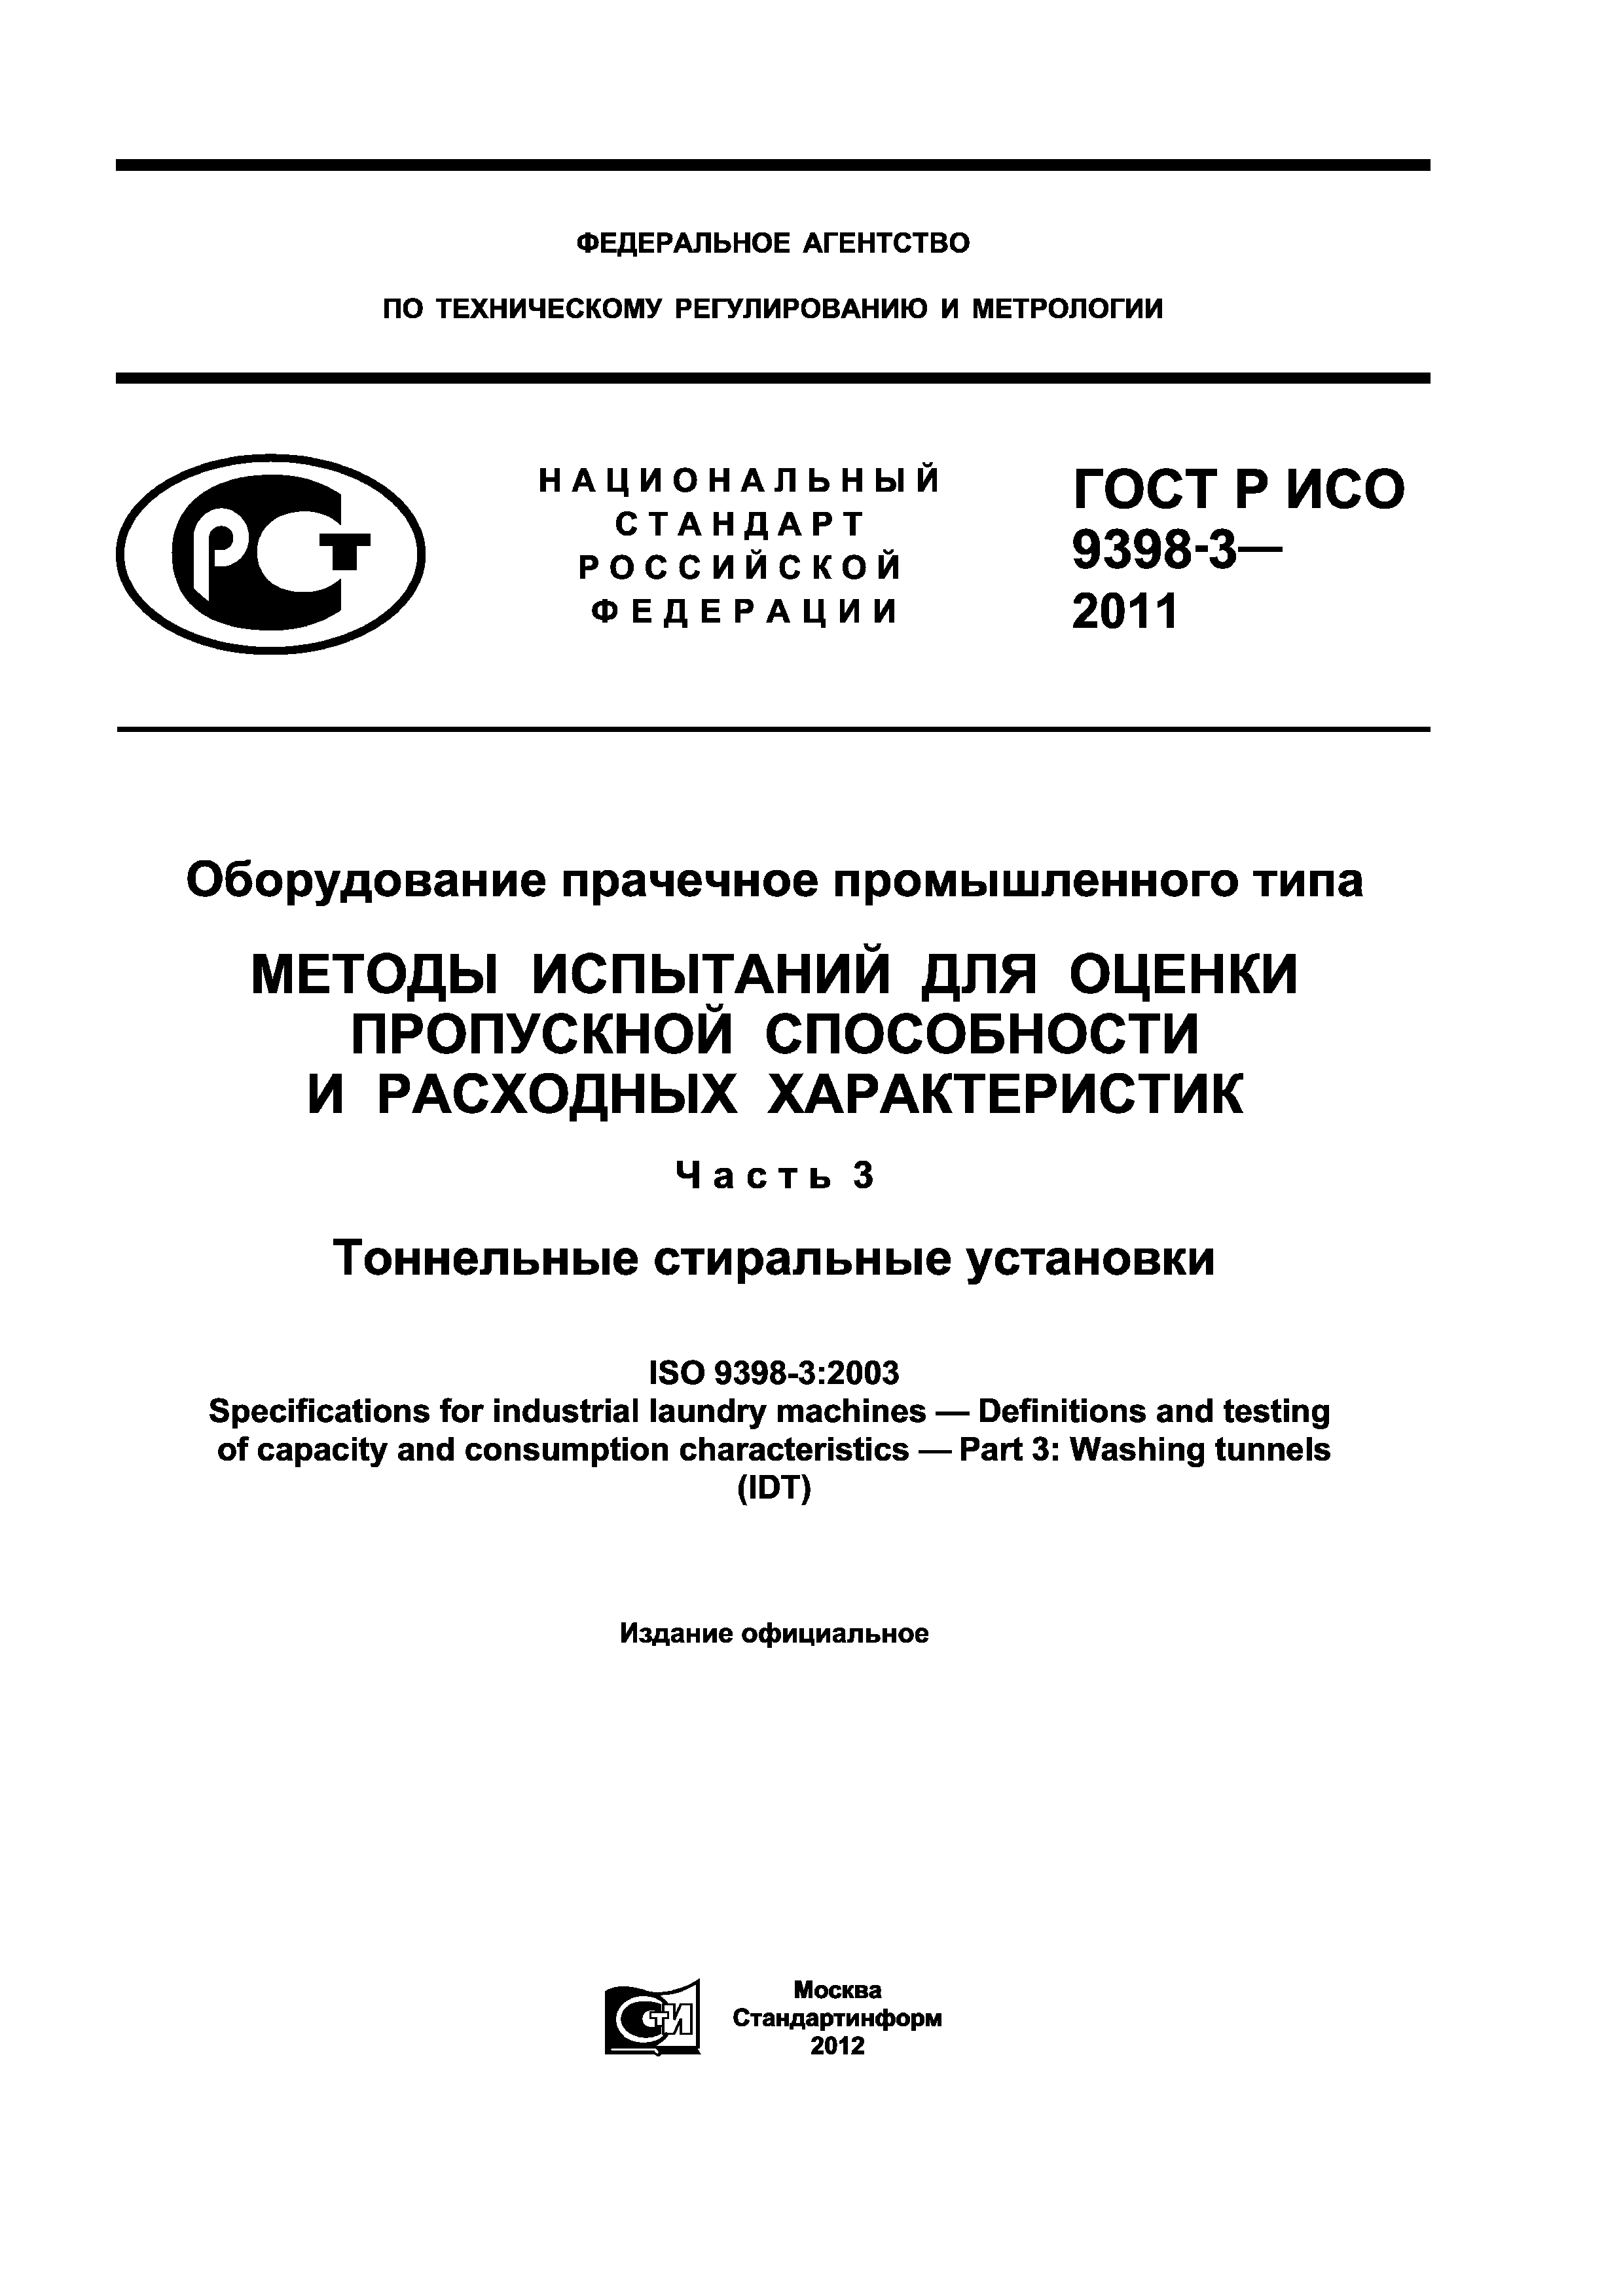 ГОСТ Р ИСО 9398-3-2011